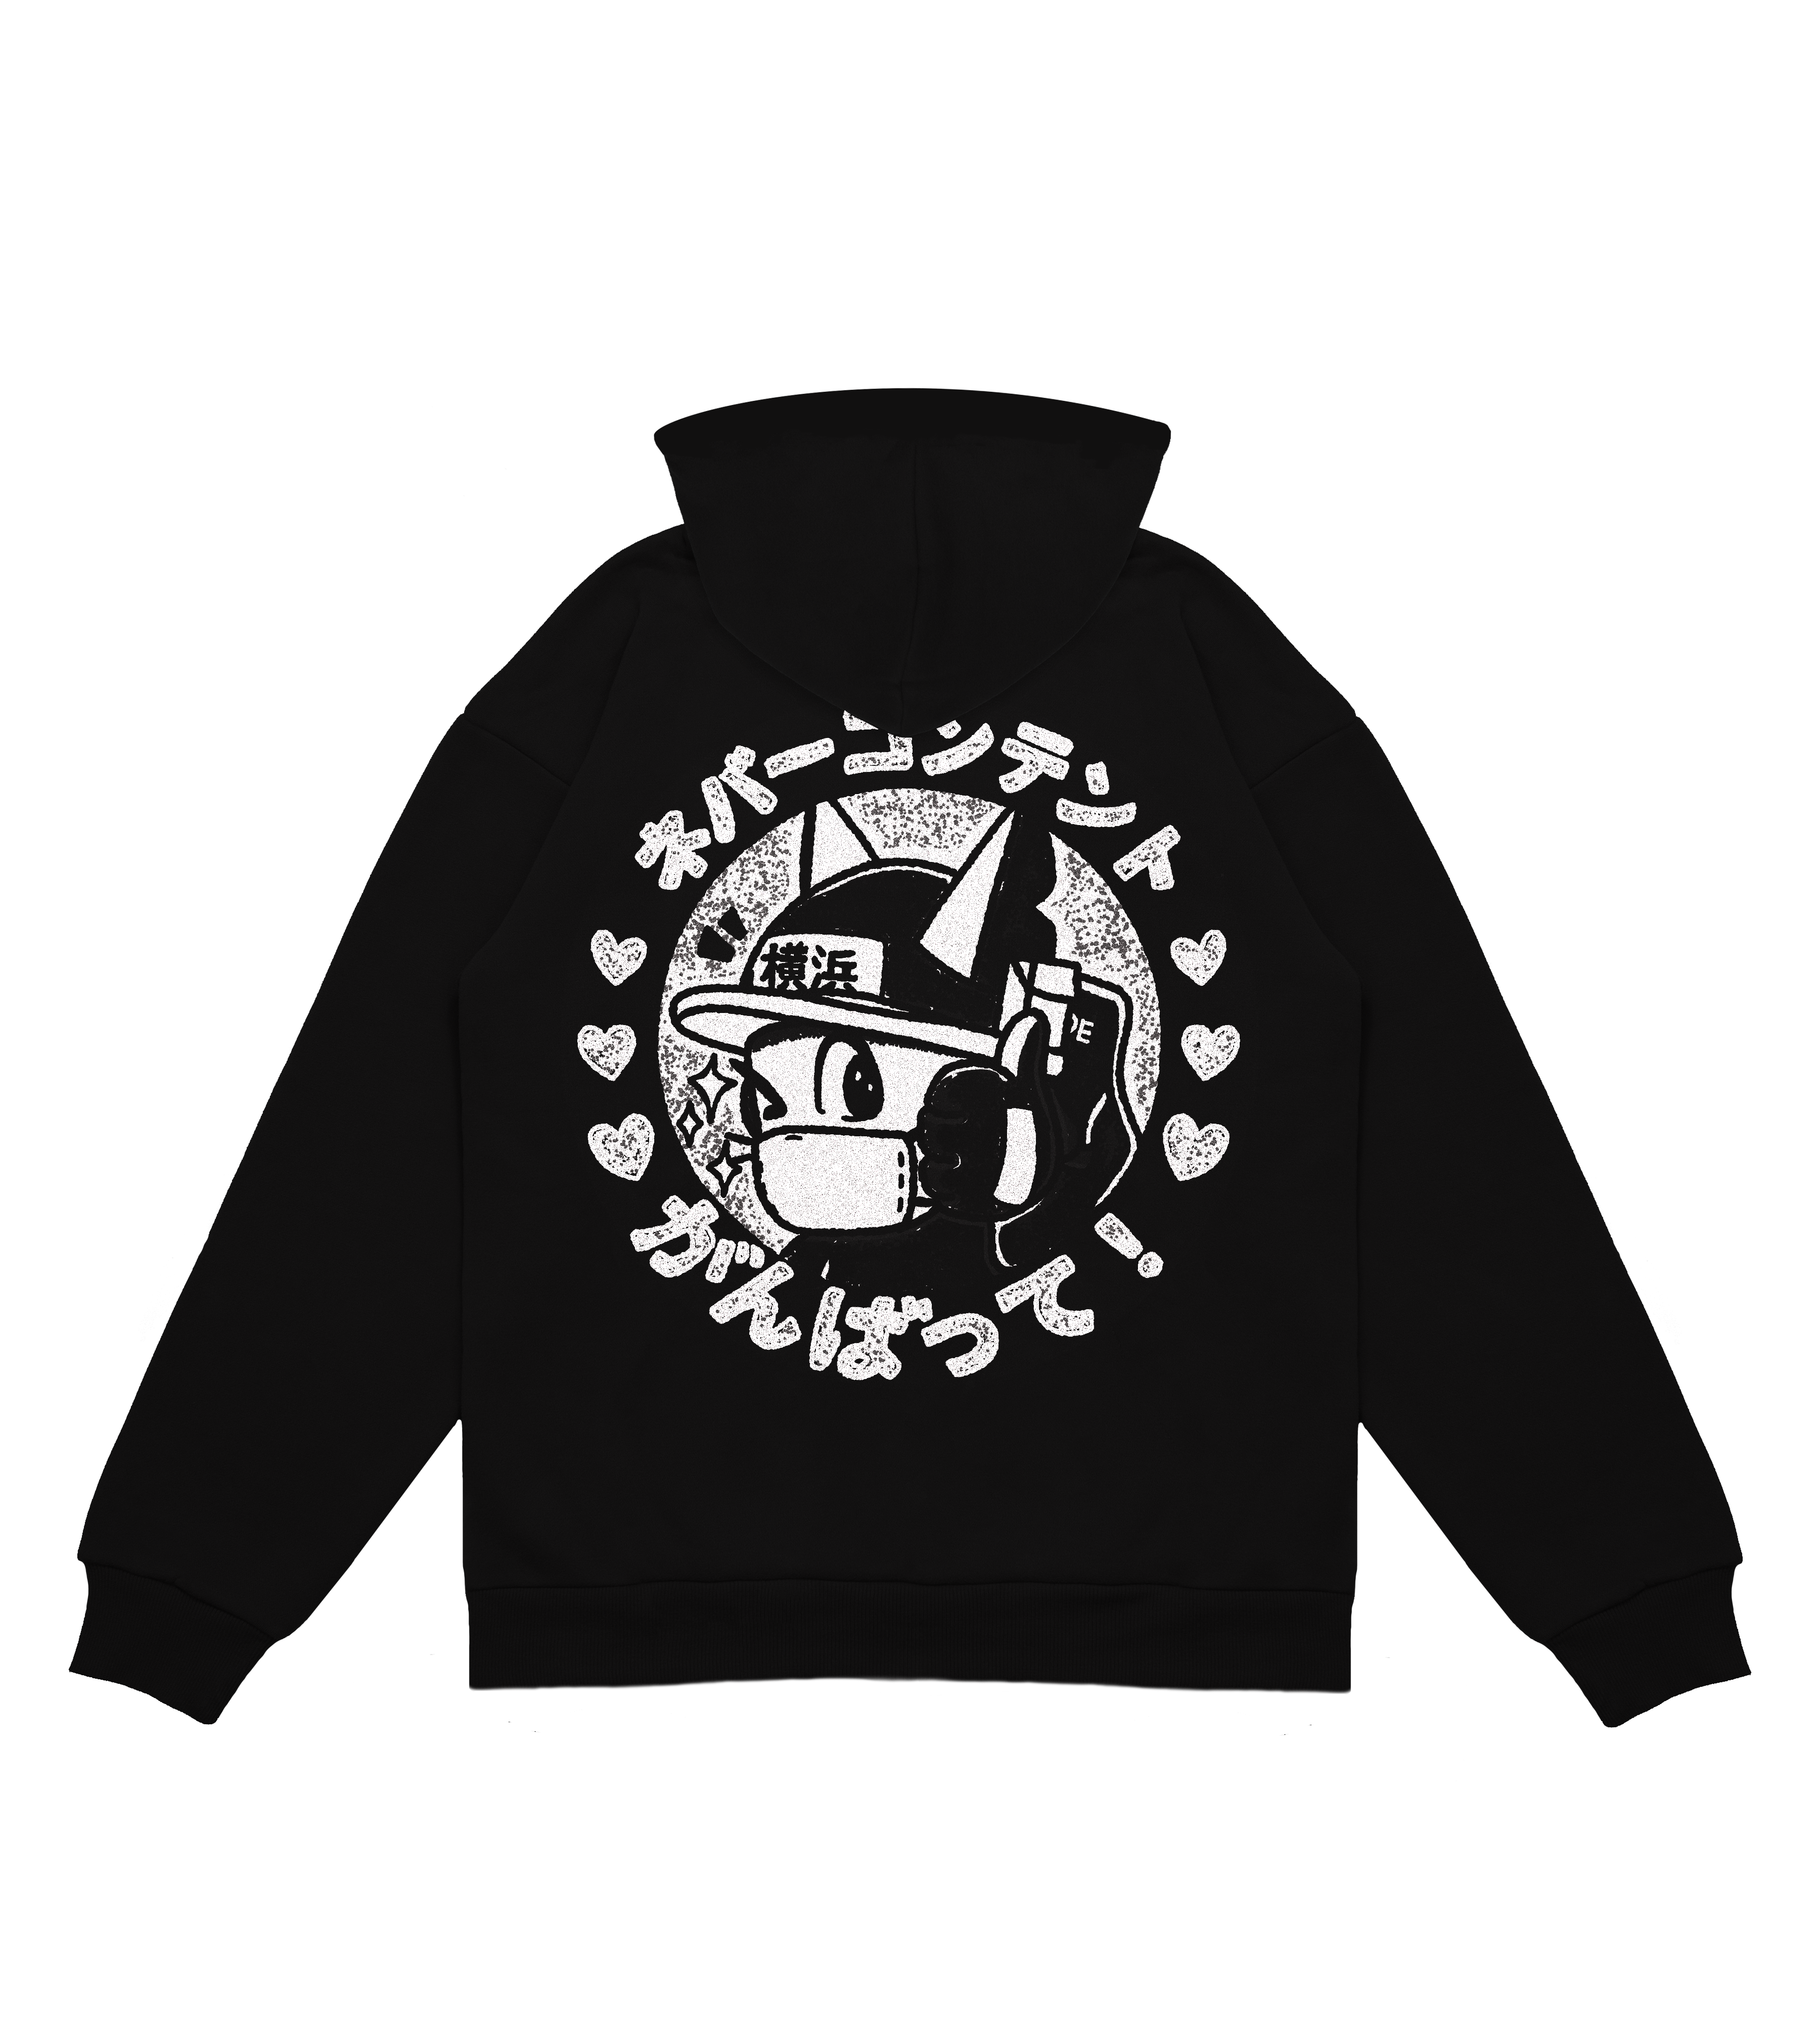 Do Your Best! - Black Hooded Sweatshirt